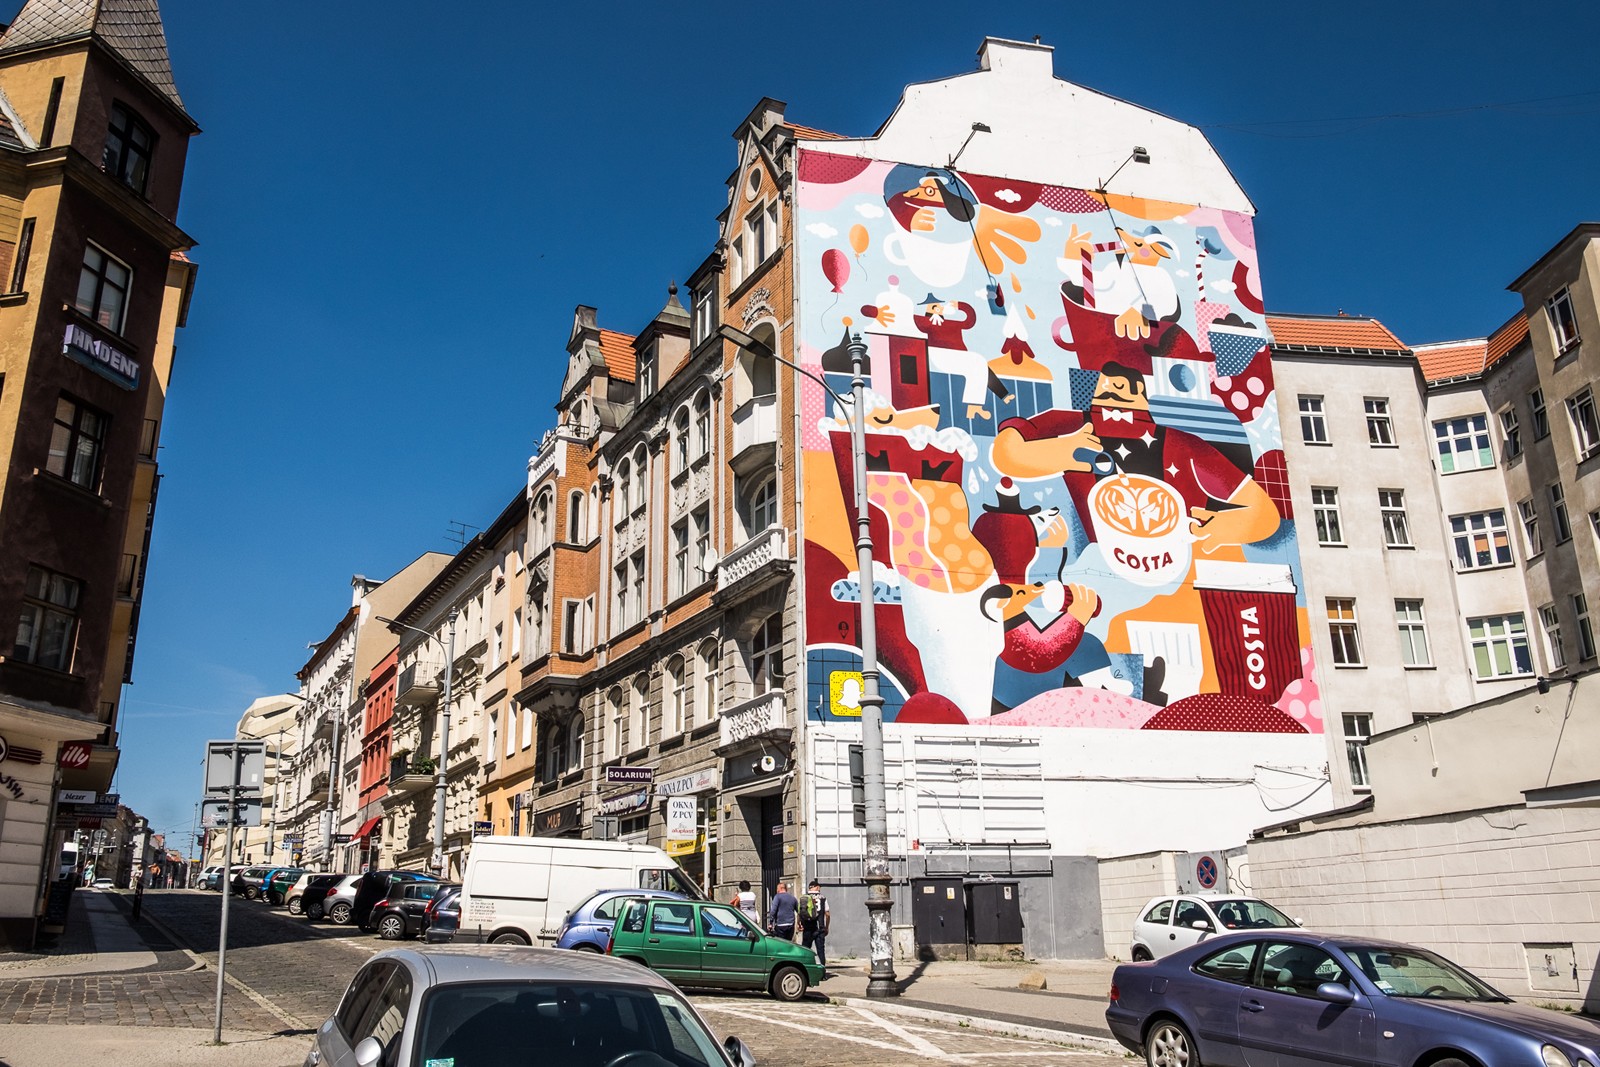 Mural w Poznaniu przy ulicy Święty Marcin dla marki Costa Coffee projektu Karola Banacha | kampania murali dla Costa Coffee - Polscy ilustratorzy | Portfolio